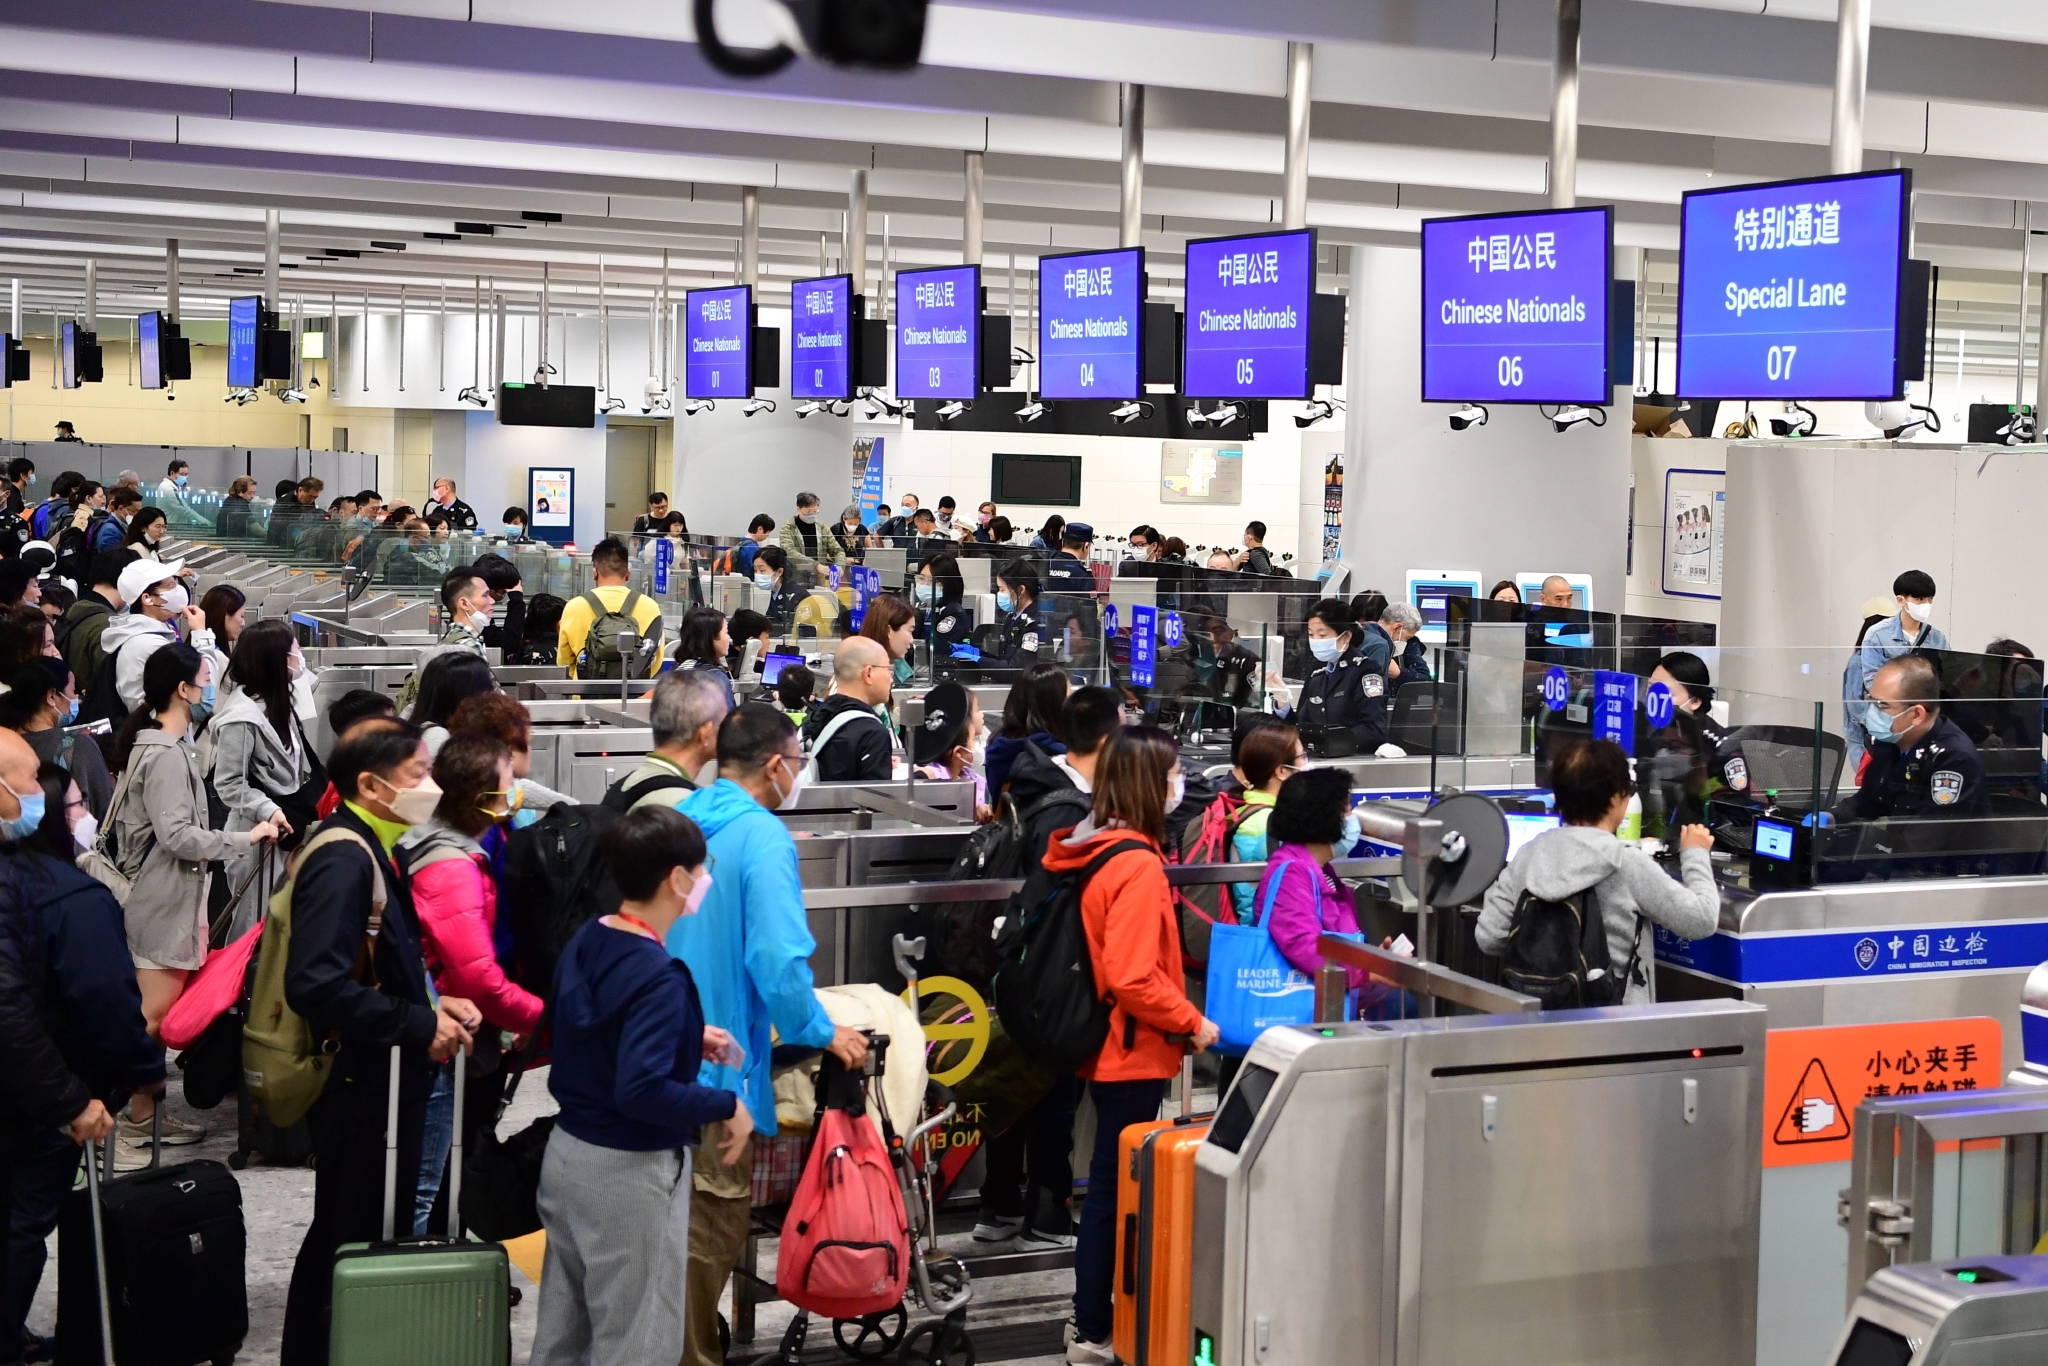 西九龍邊檢站民警高效為出入境旅客辦理通關手續。深圳出入境邊防檢查總站供圖